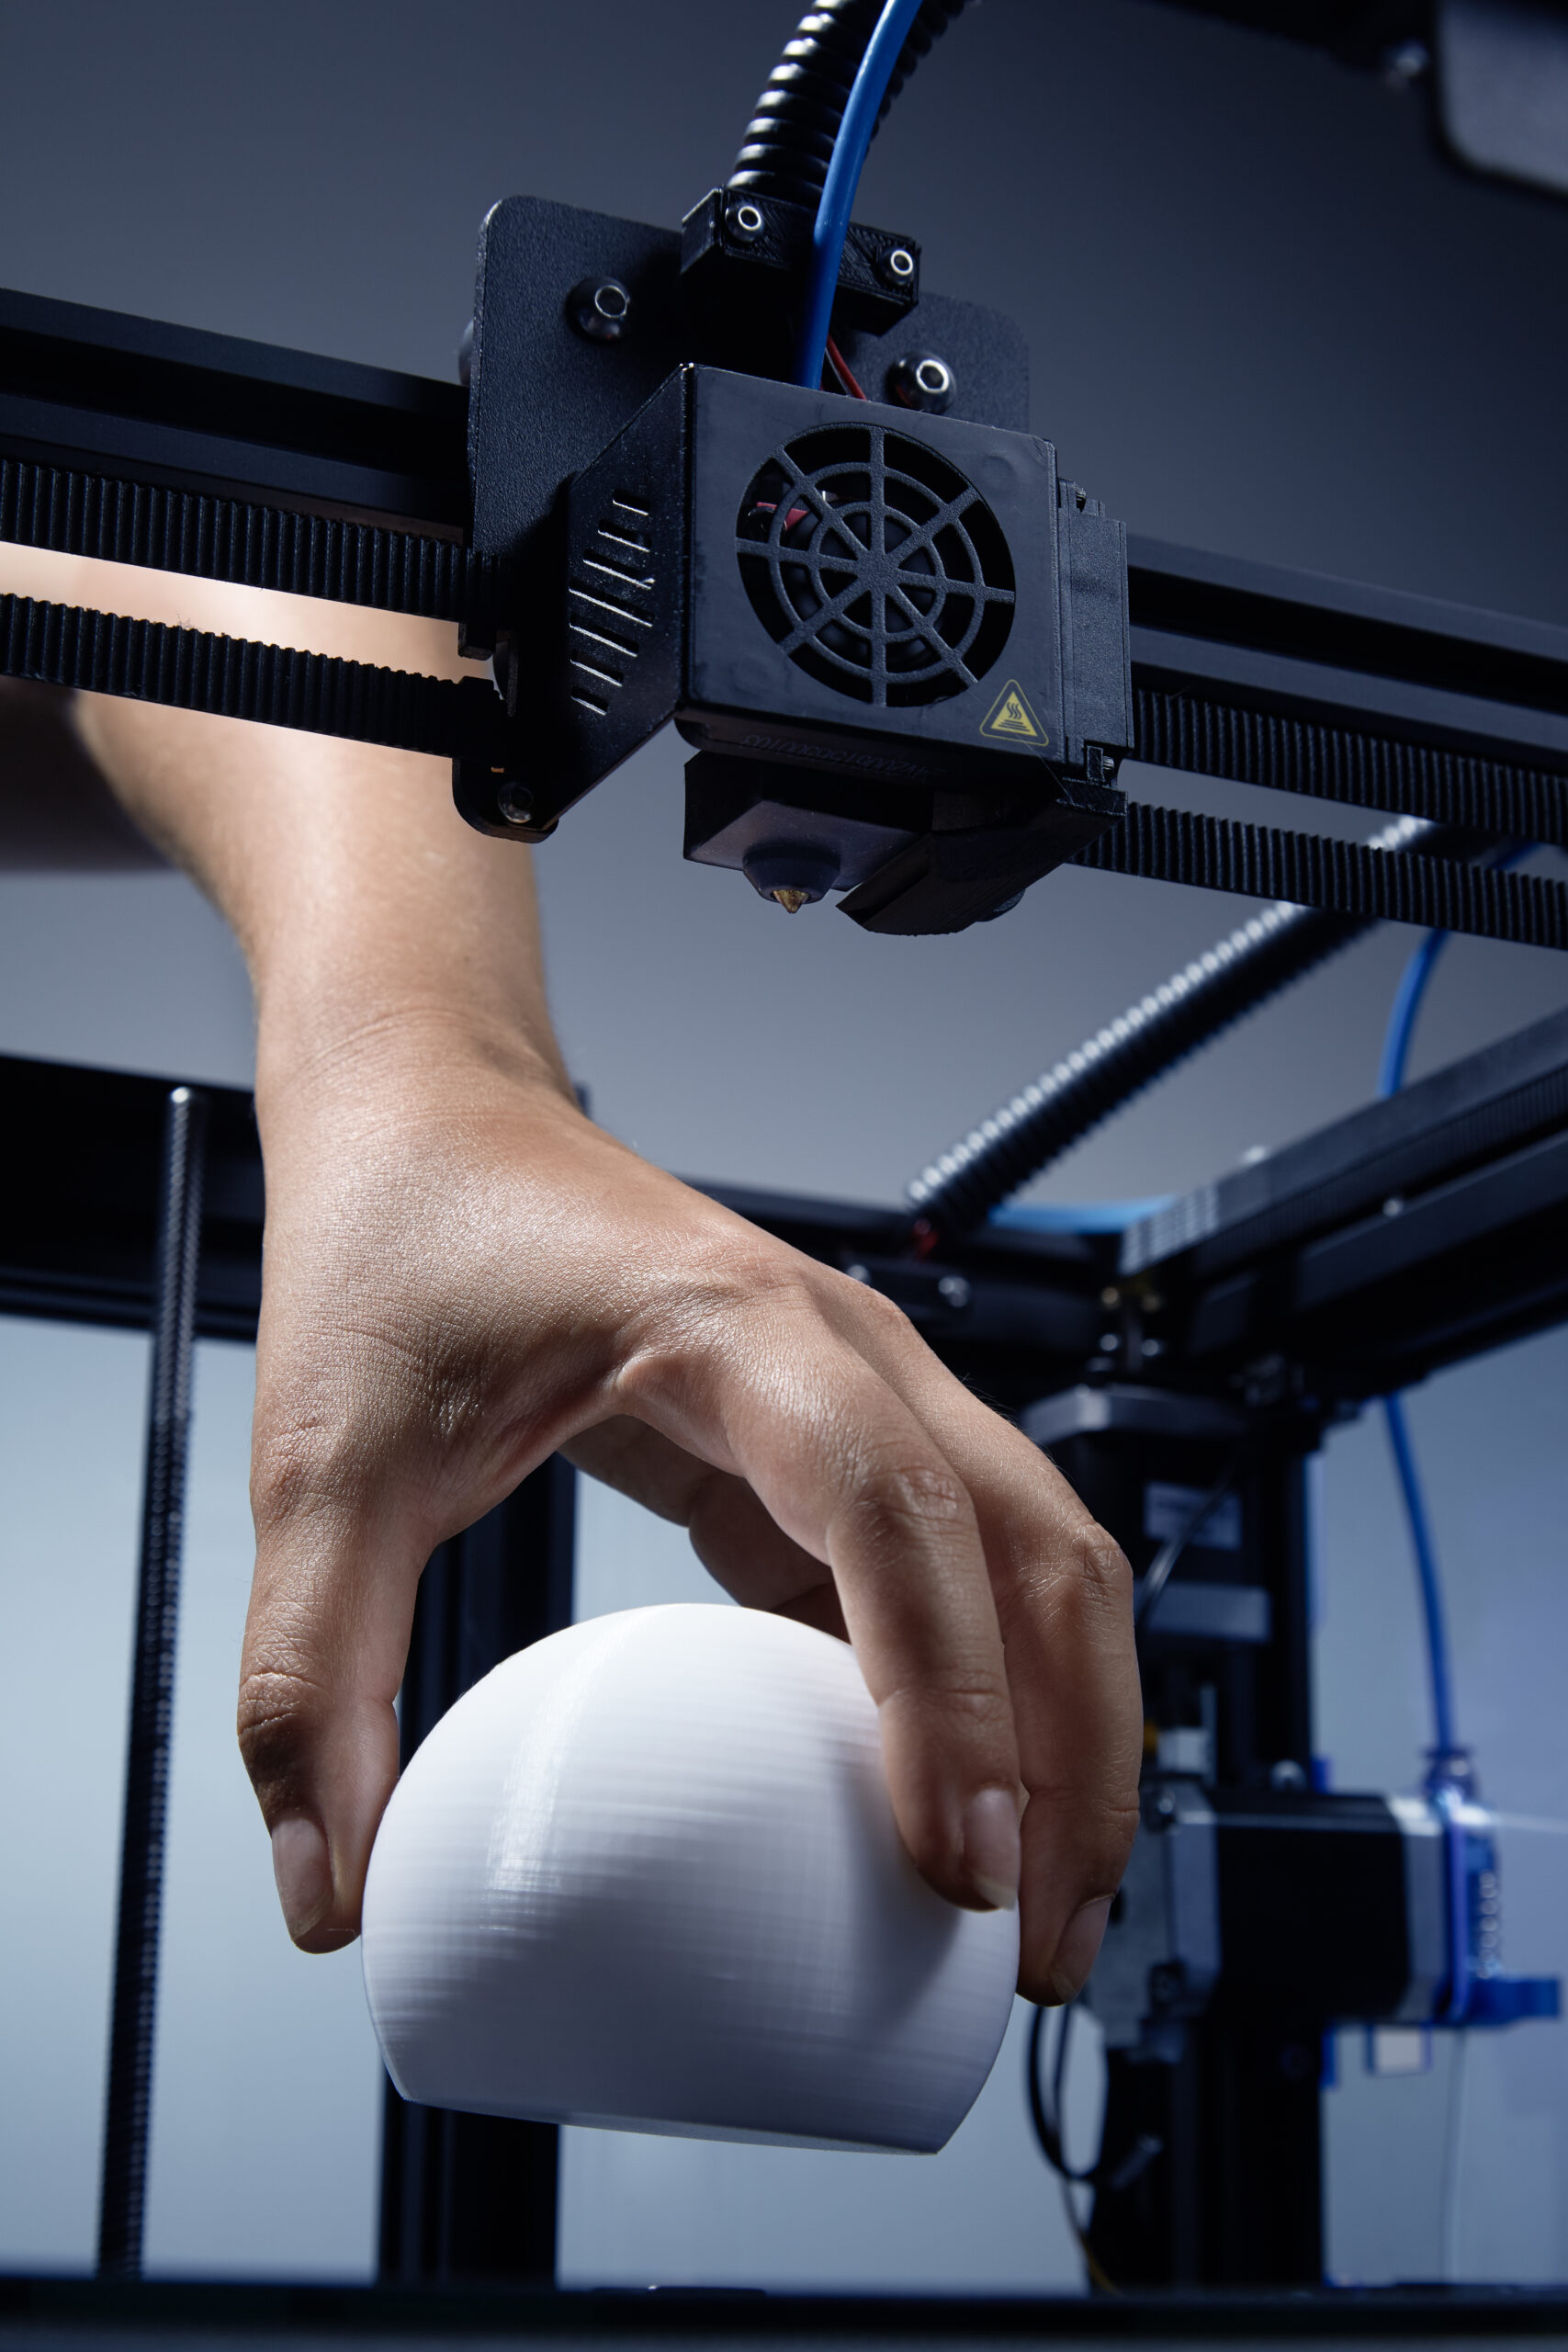 3D printer finish prototype print. طابعة ثلاثية الأبعاد